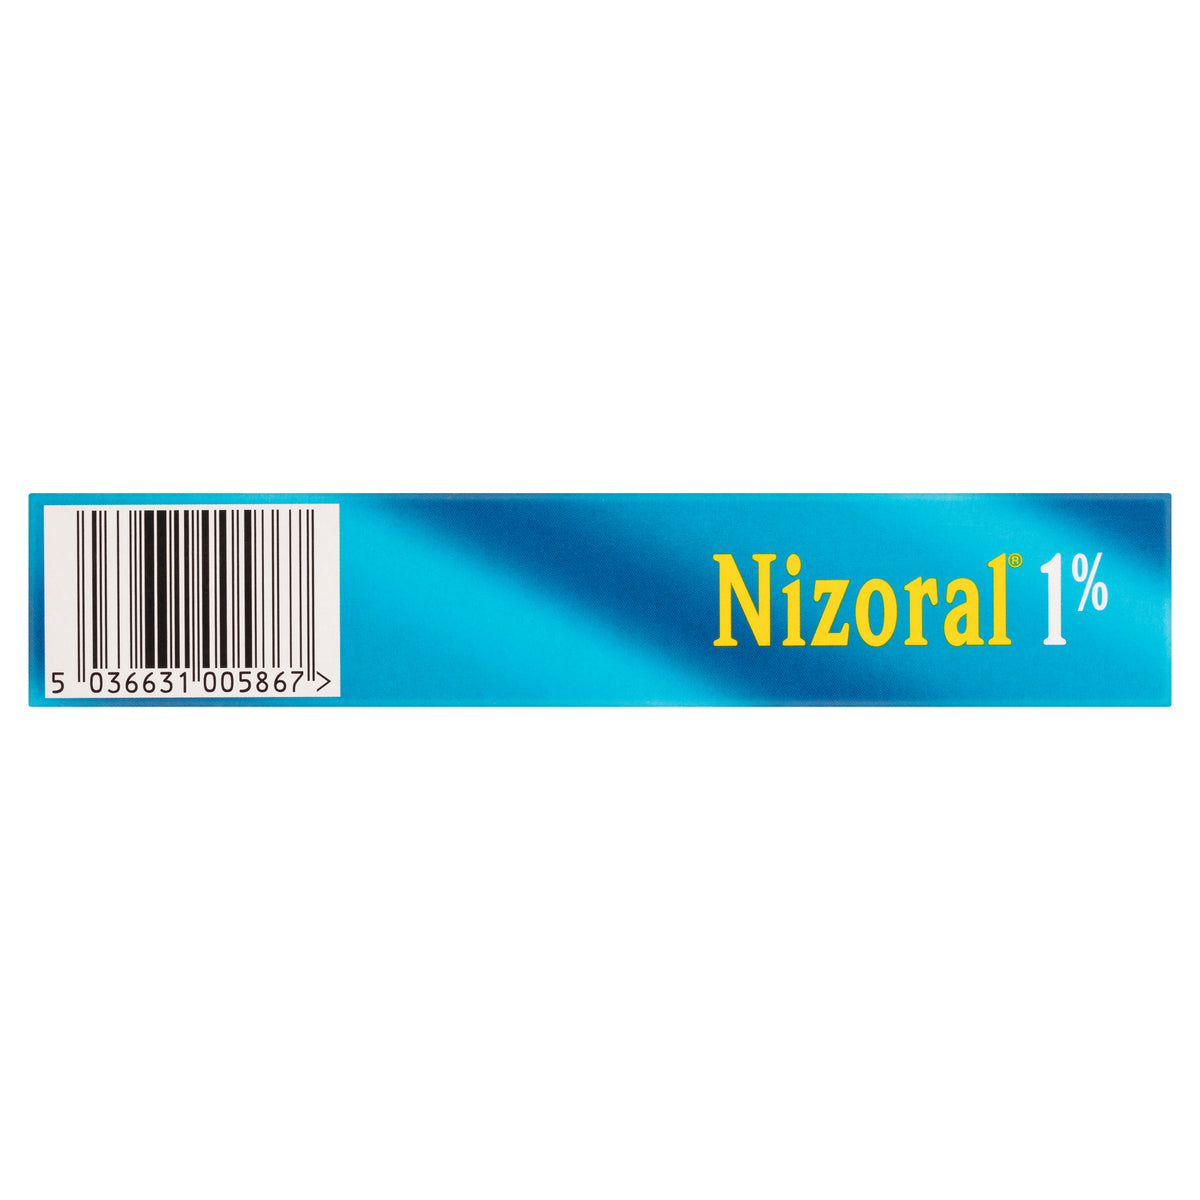 Nizoral 1% Anti-Dandruff Treatment 125mL